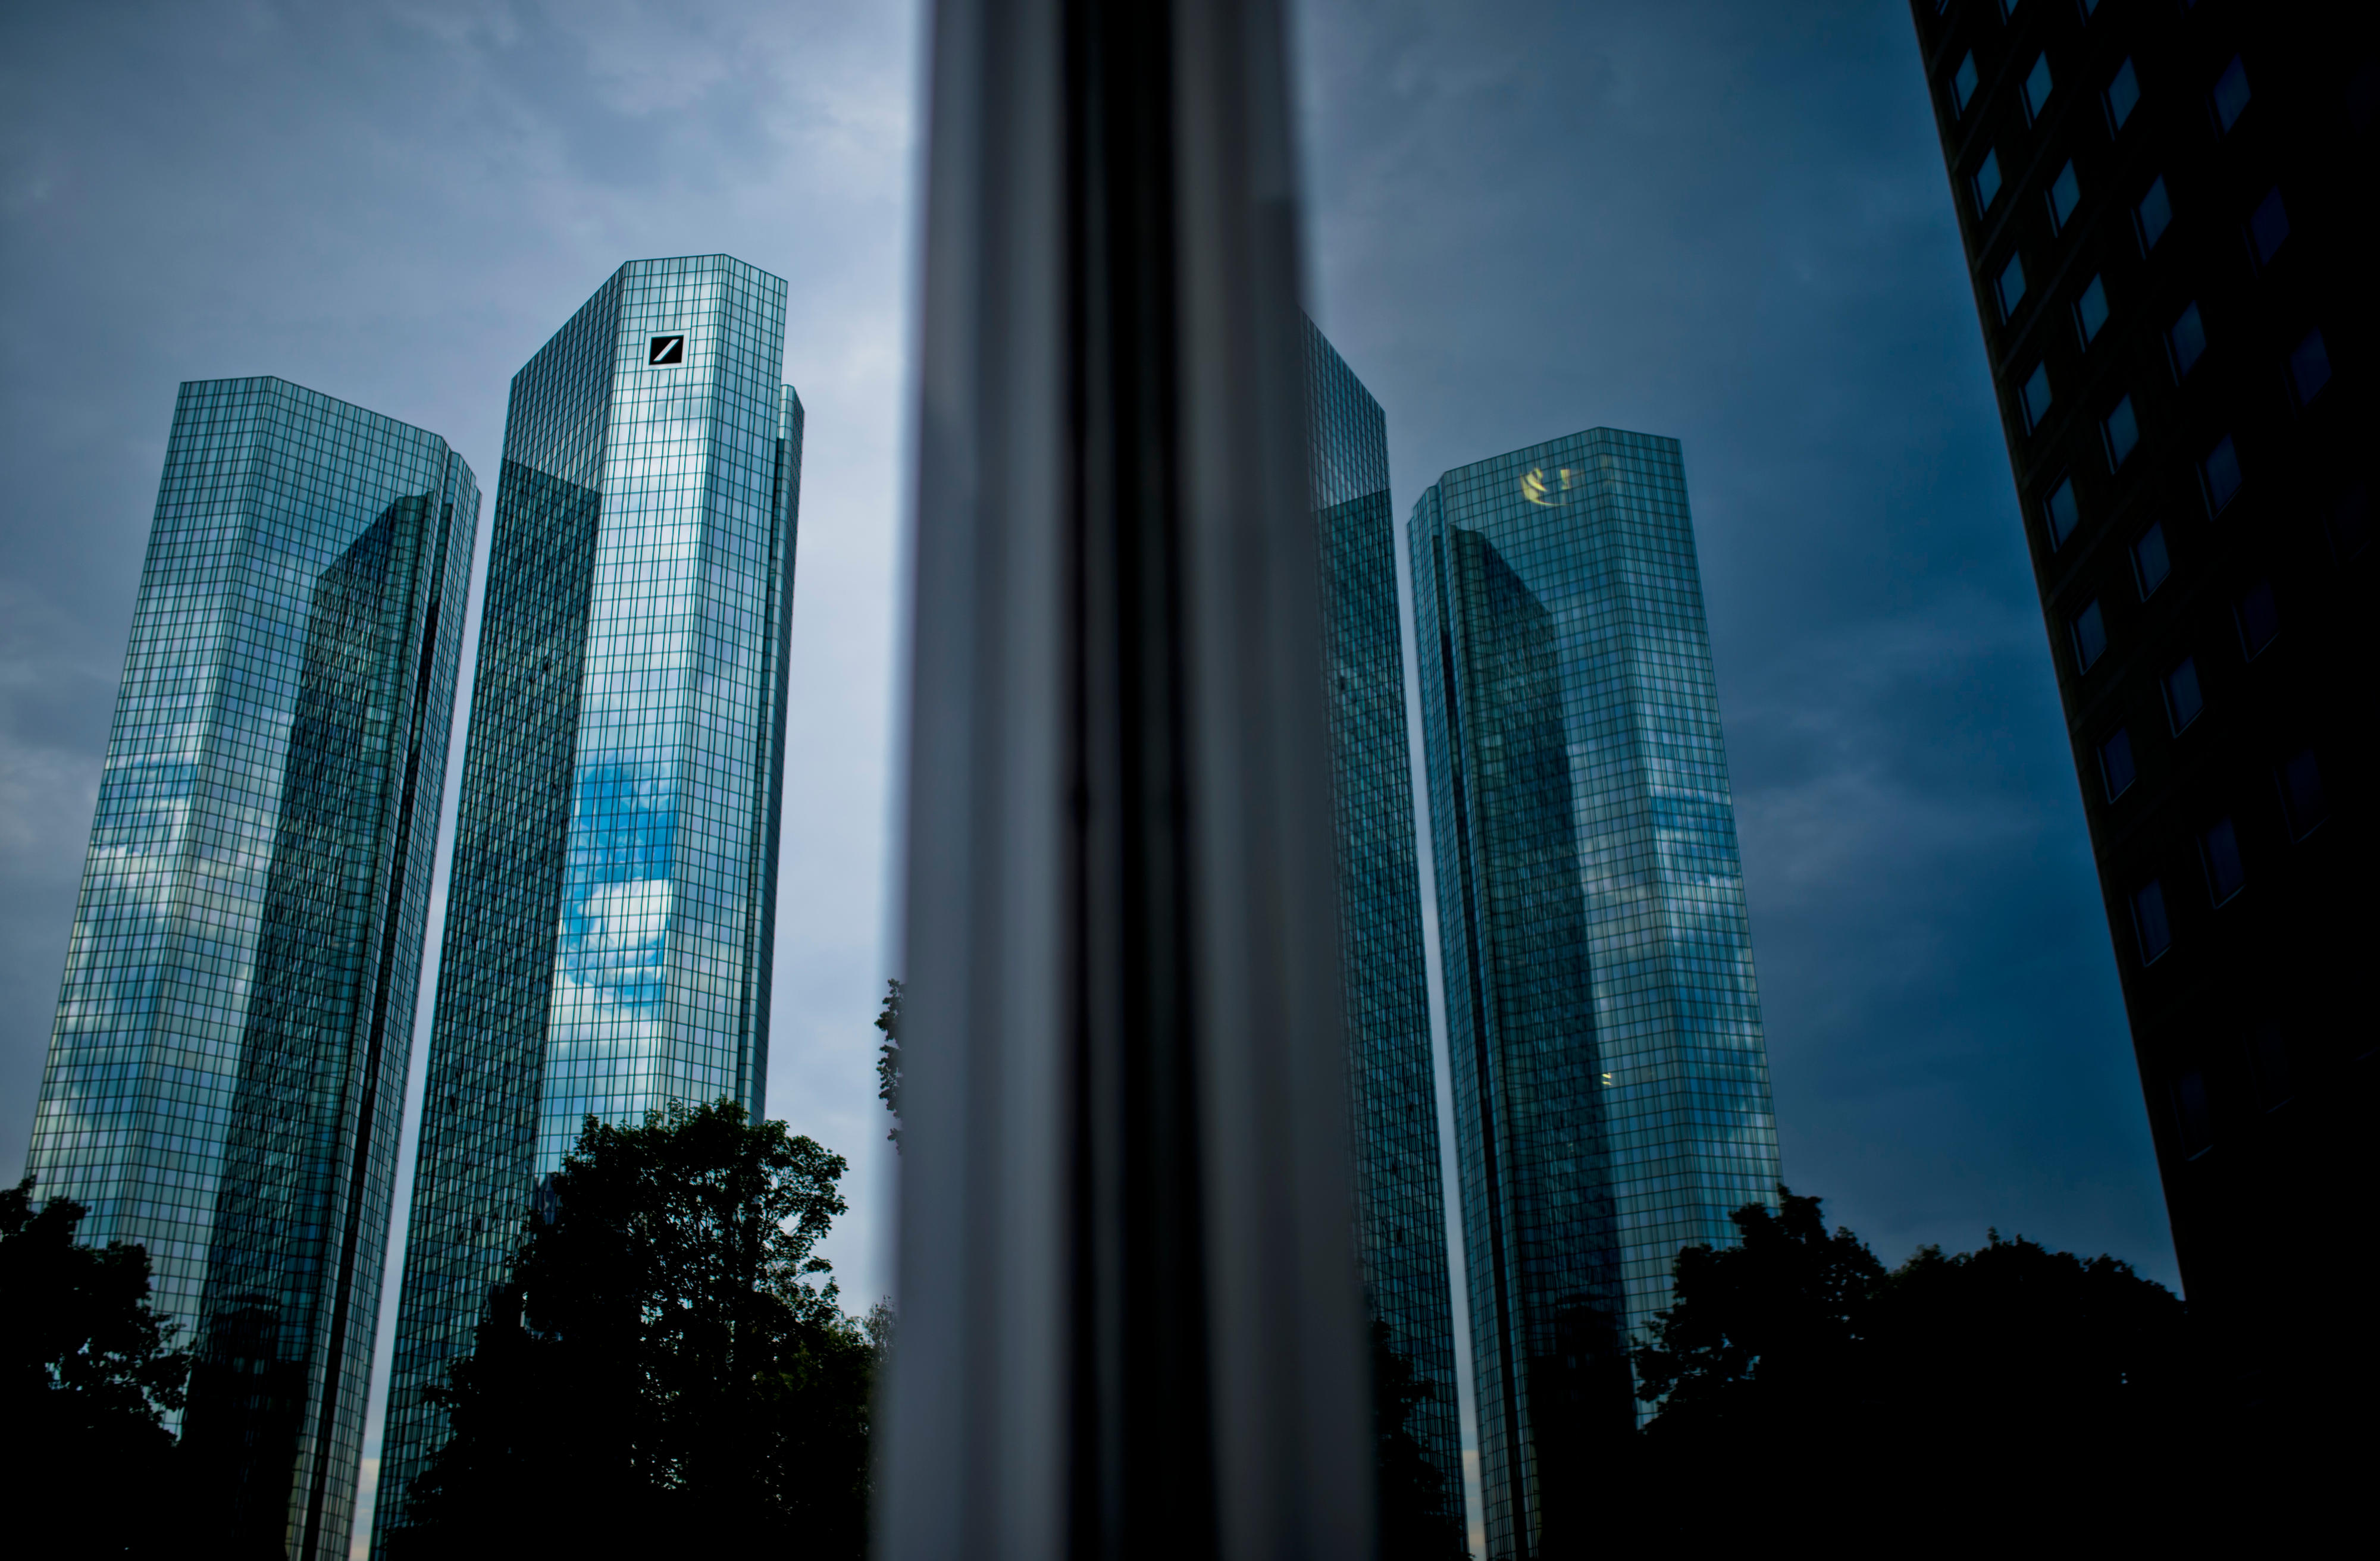 Zentrale der Deutschen Bank, Frankfurt am Main